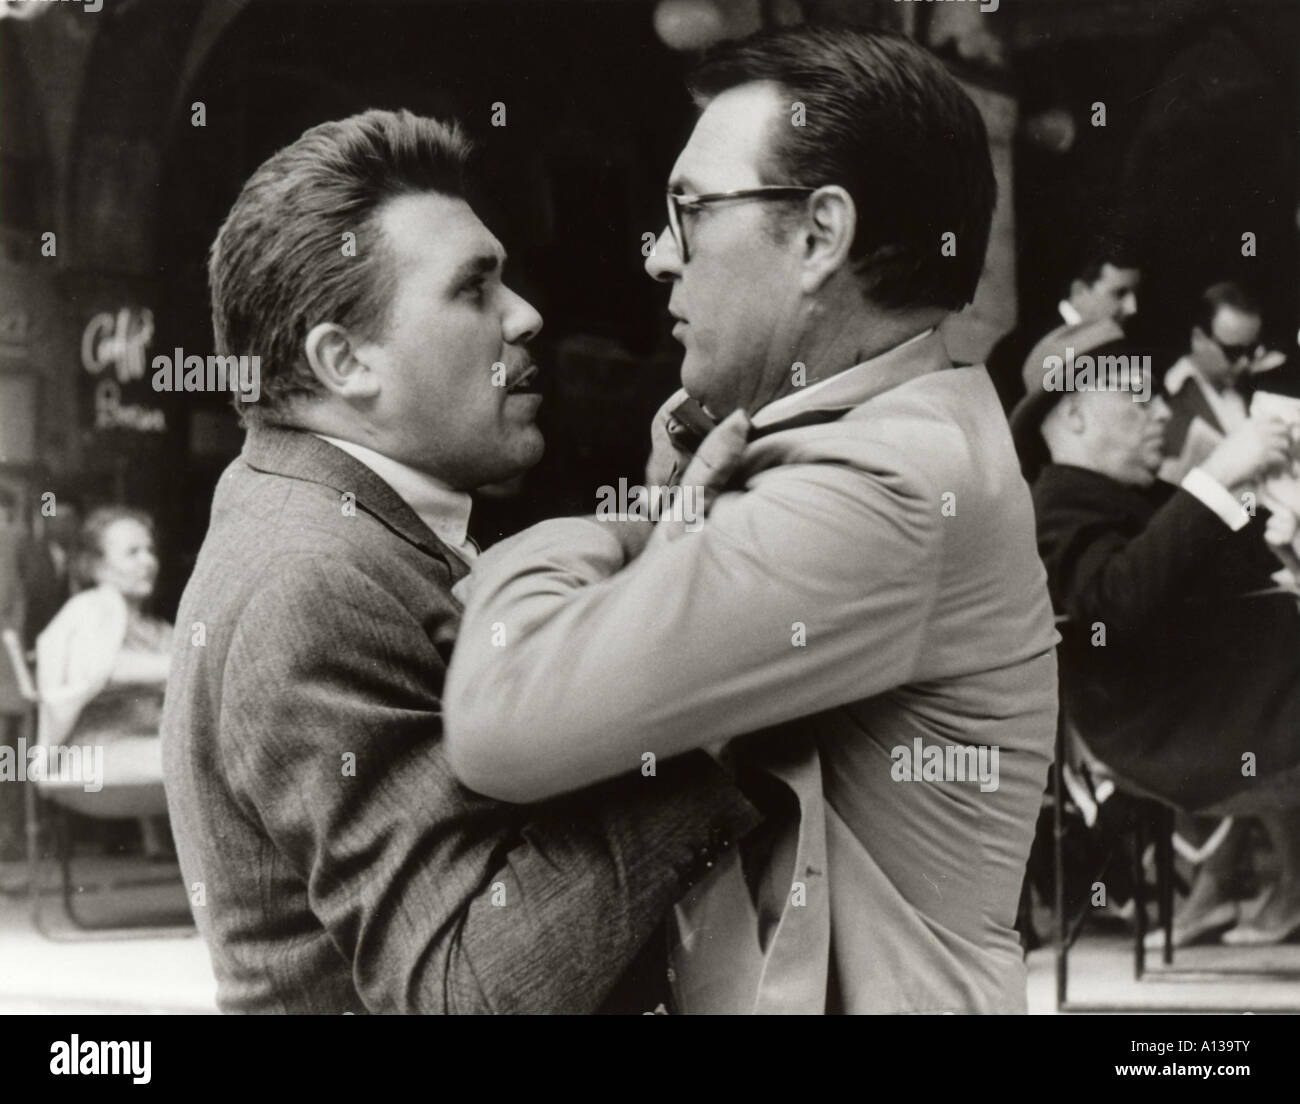 Signore e signori Year 1966 Director Pietro Germi Gastone Moschin Palme d or at 1966 Cannes Film Festival ex aequo with Un homme Stock Photo